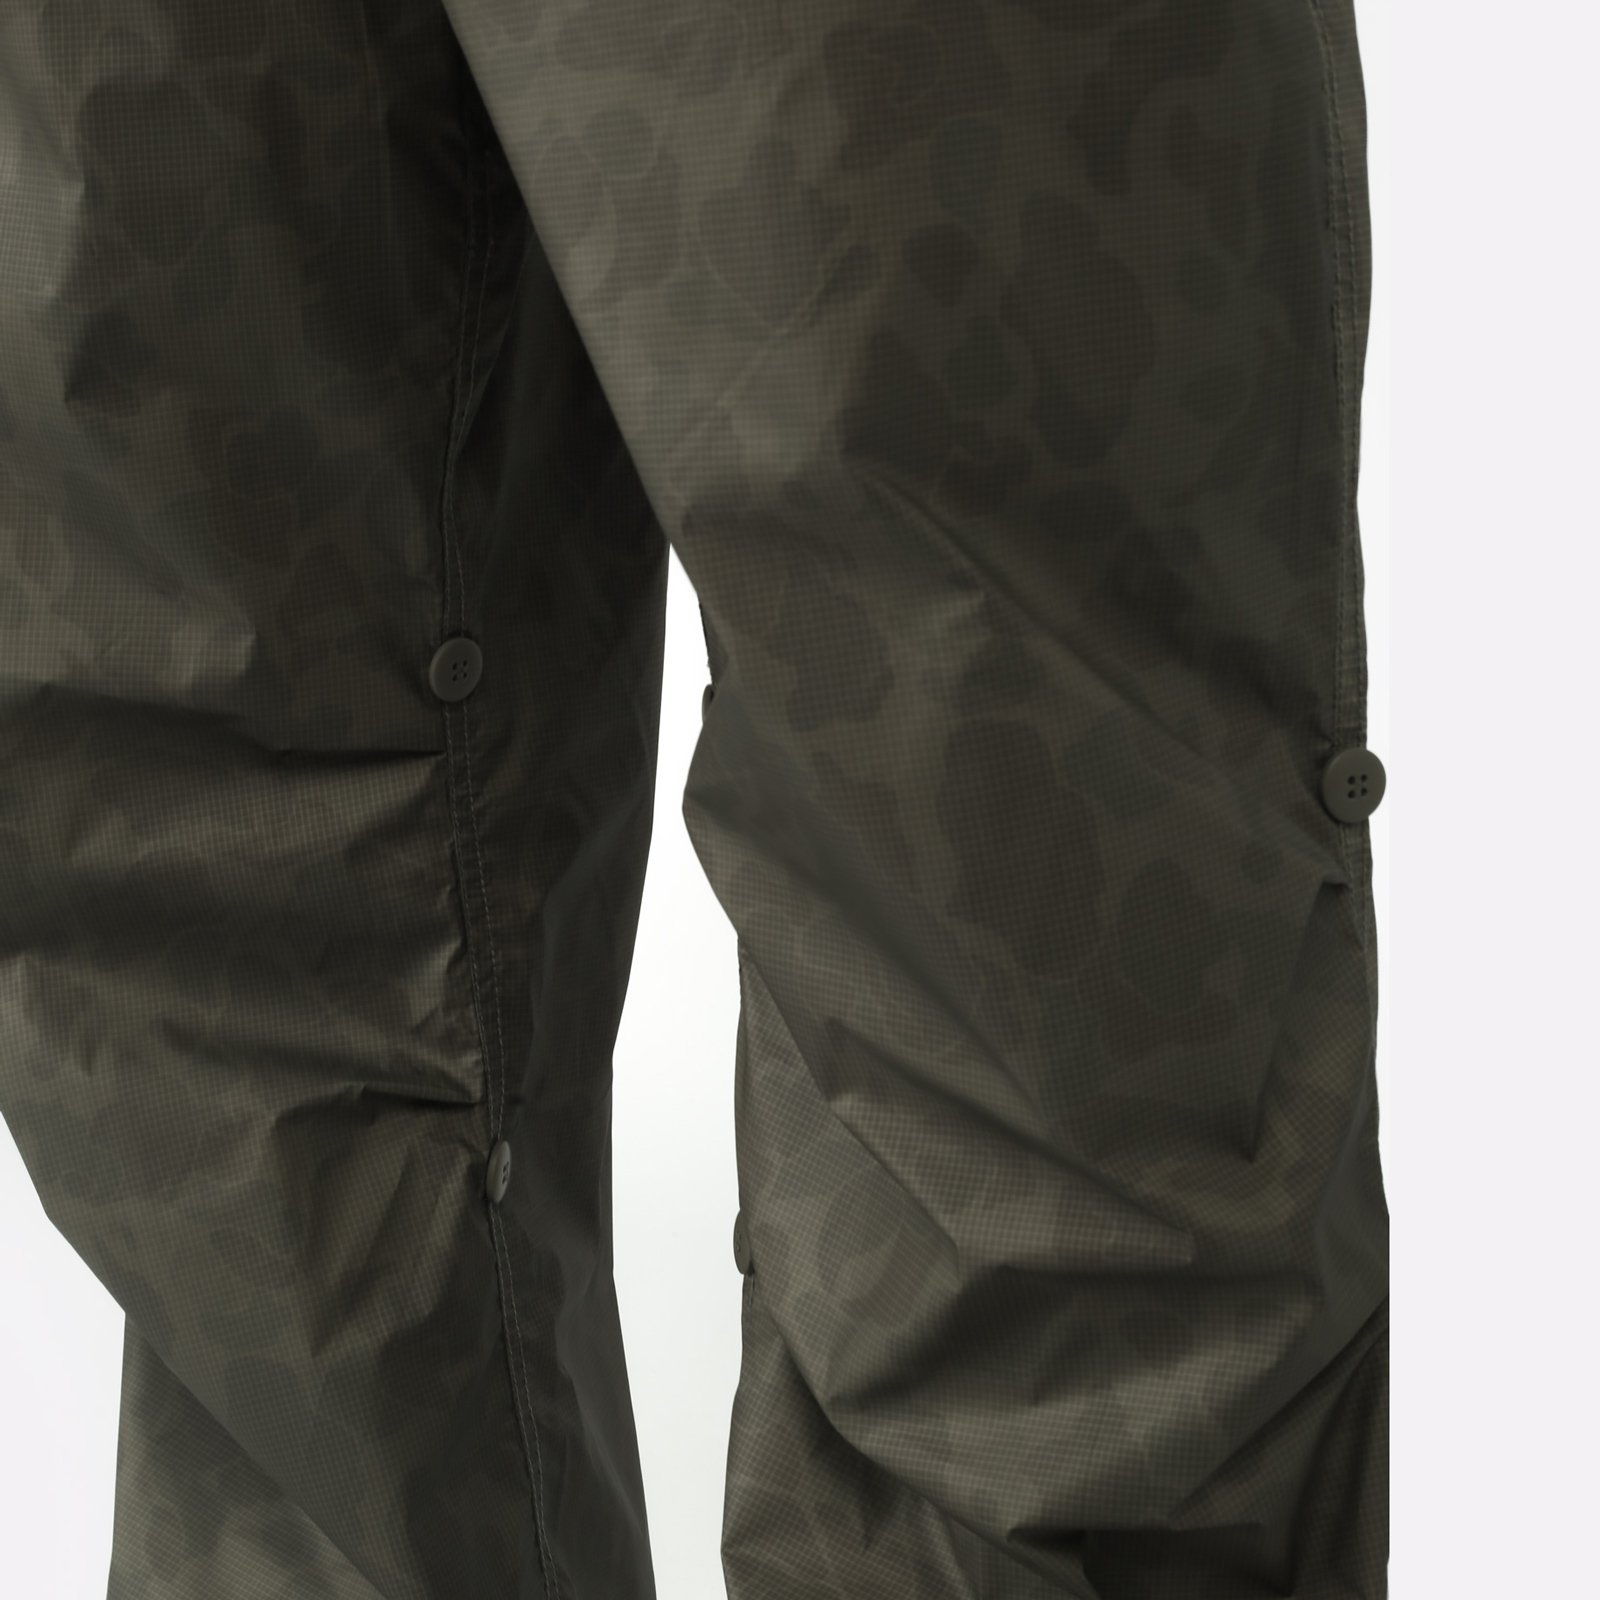 Мужские брюки Alpha Industries Ripstop Parachute Pants (UBU54001C1-OG-107-green)  - цена, описание, фото 4